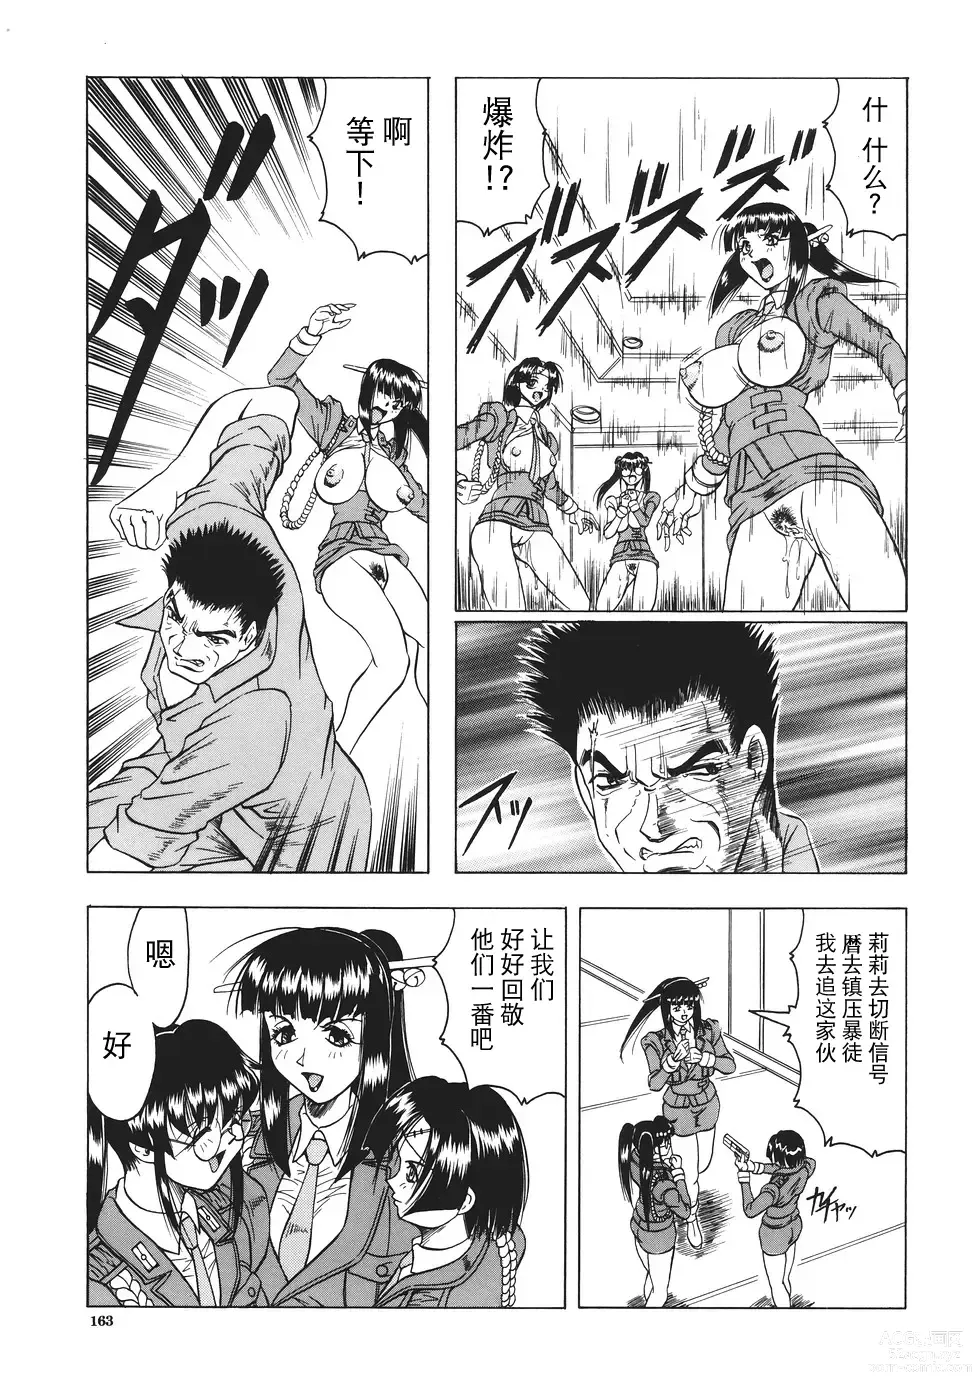 Page 164 of manga Kamyla